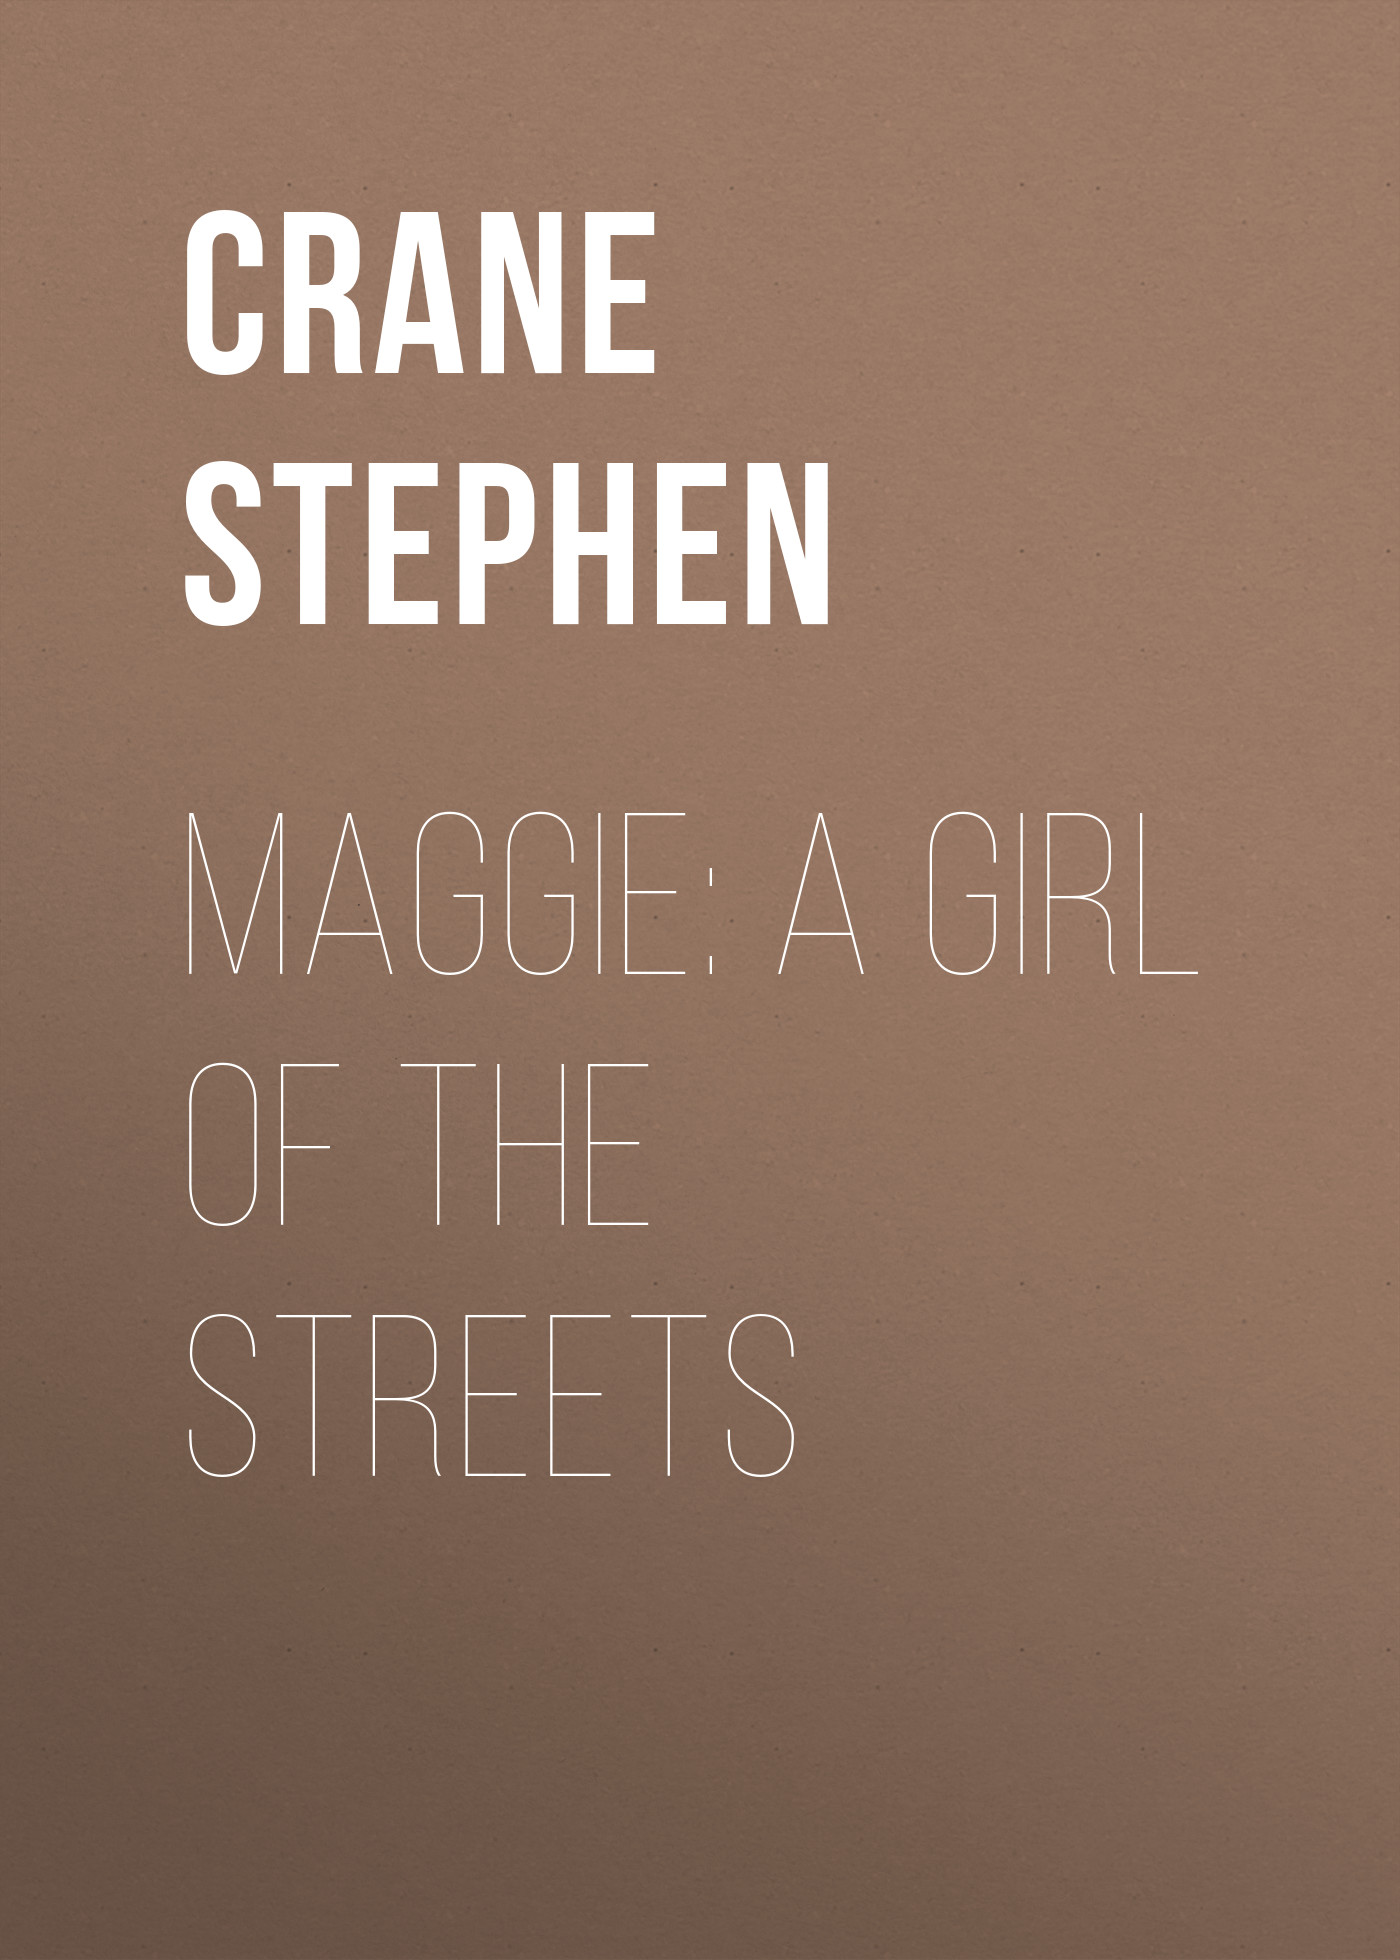 Книга Maggie: A Girl of the Streets из серии , созданная Stephen Crane, может относится к жанру Социальная фантастика, Литература 19 века, Зарубежная старинная литература, Зарубежная классика. Стоимость электронной книги Maggie: A Girl of the Streets с идентификатором 34837934 составляет 0 руб.